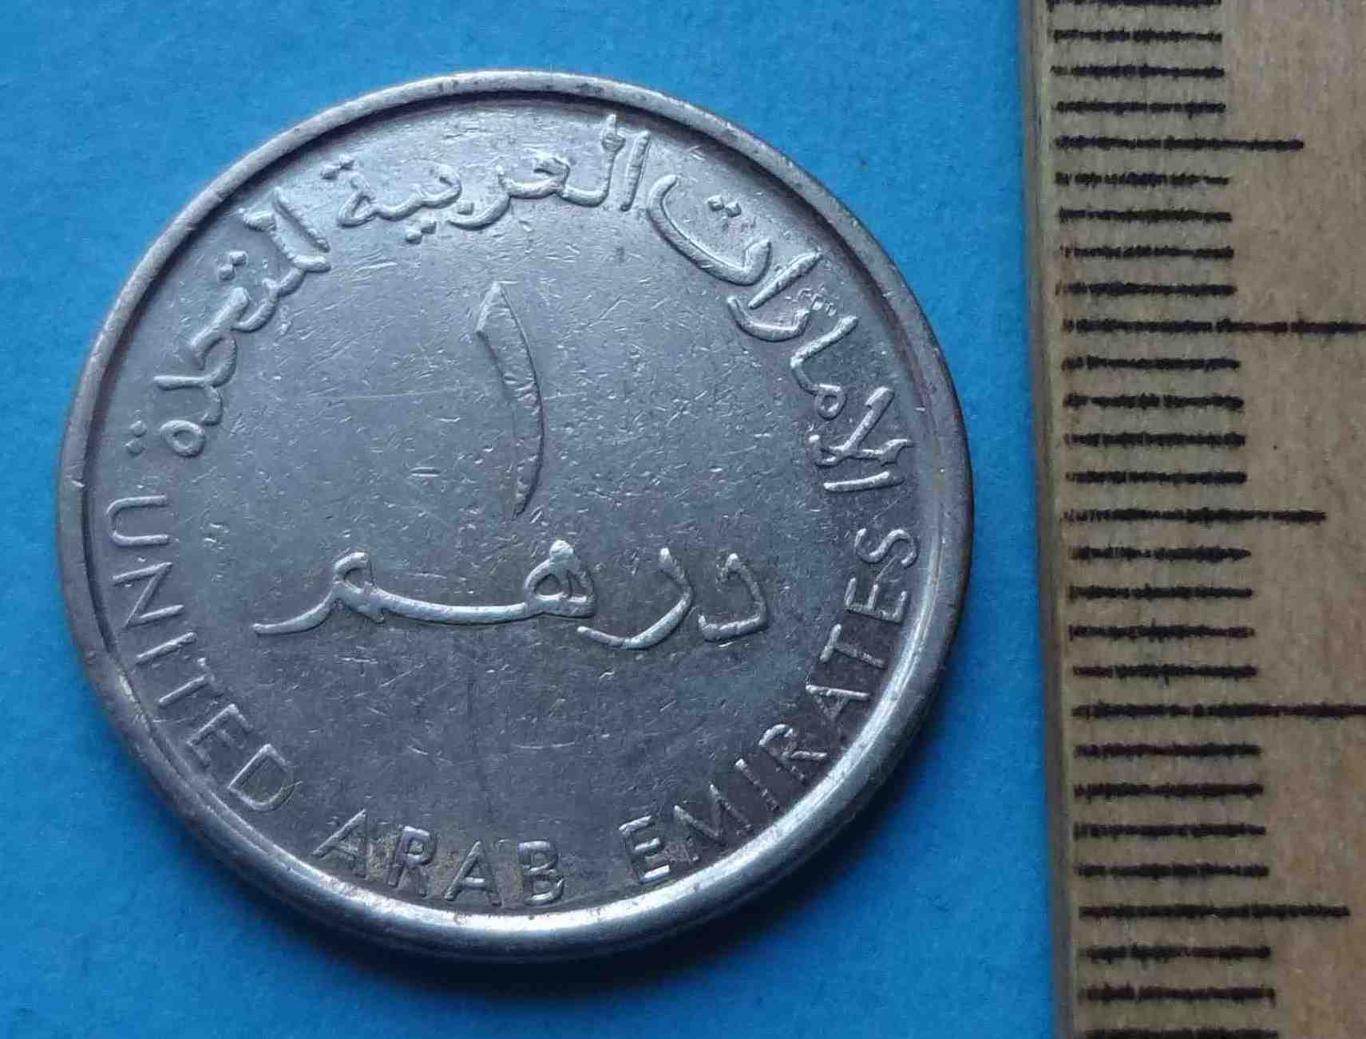 ОАЭ Объединенные Арабские Эмираты 1 дирхам 1973-1989 гг 1